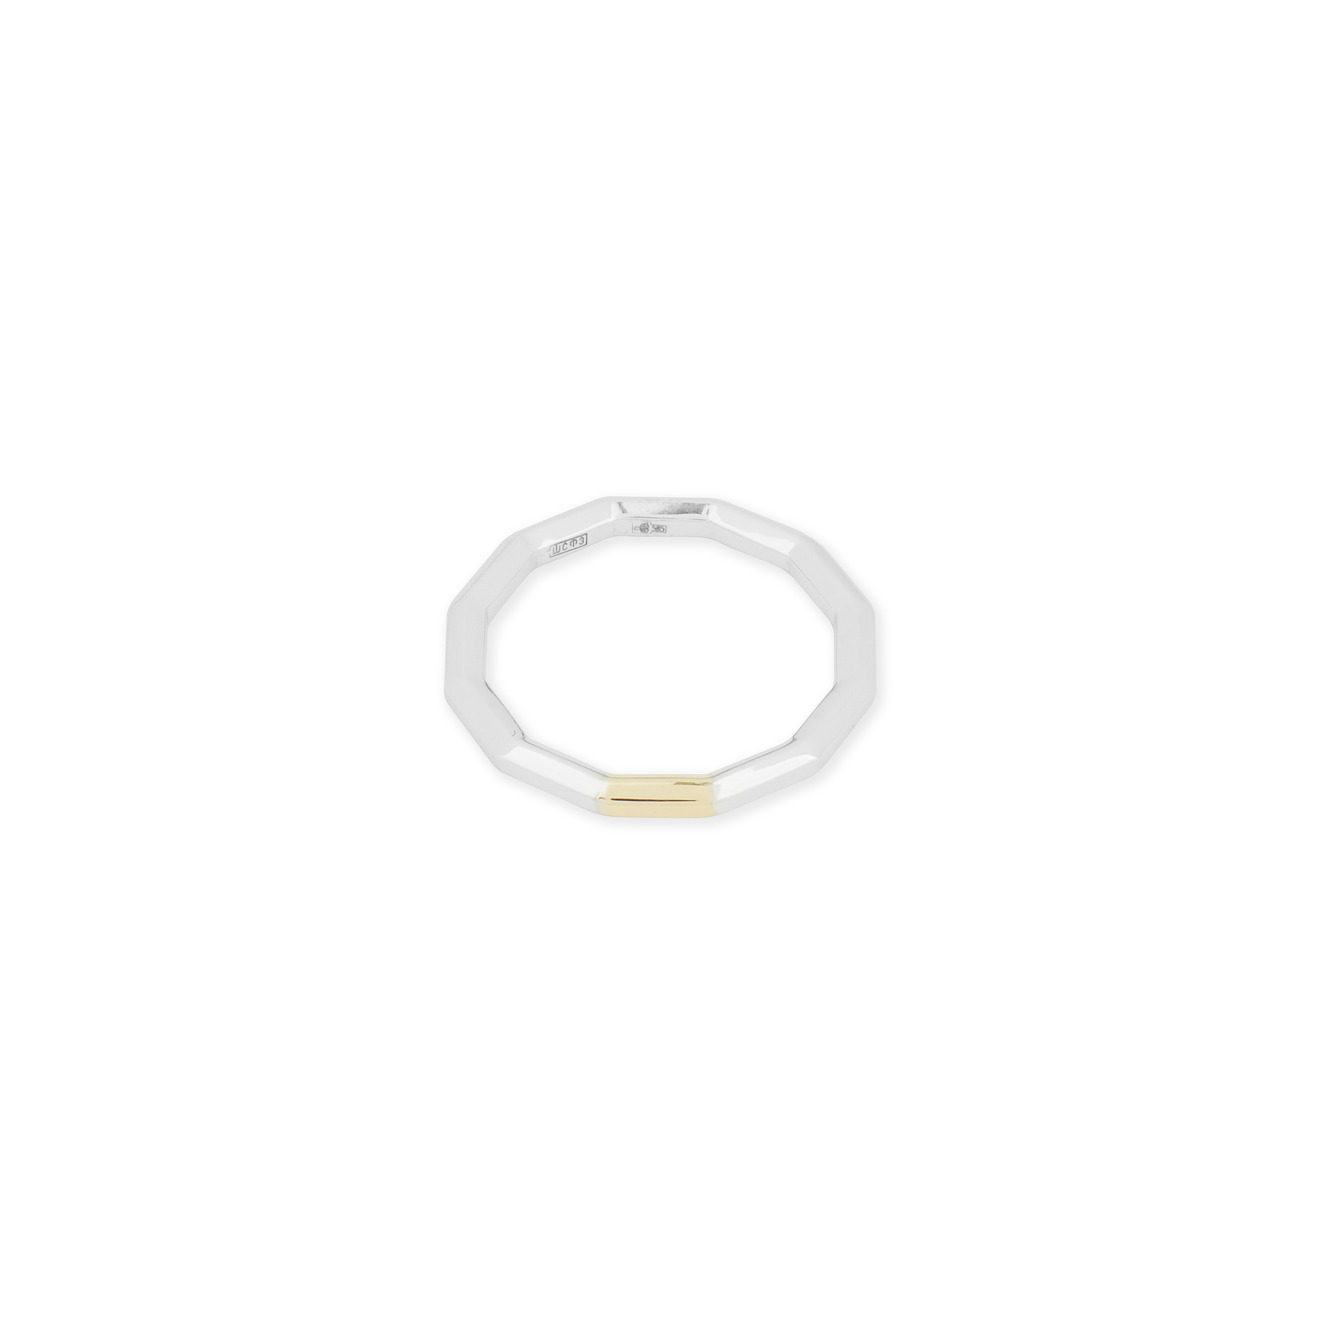 Avgvst Обручальное кольцо из золота Double Gold с сегментом из лимонного золота avgvst кольцо мюзле из лимонного золота